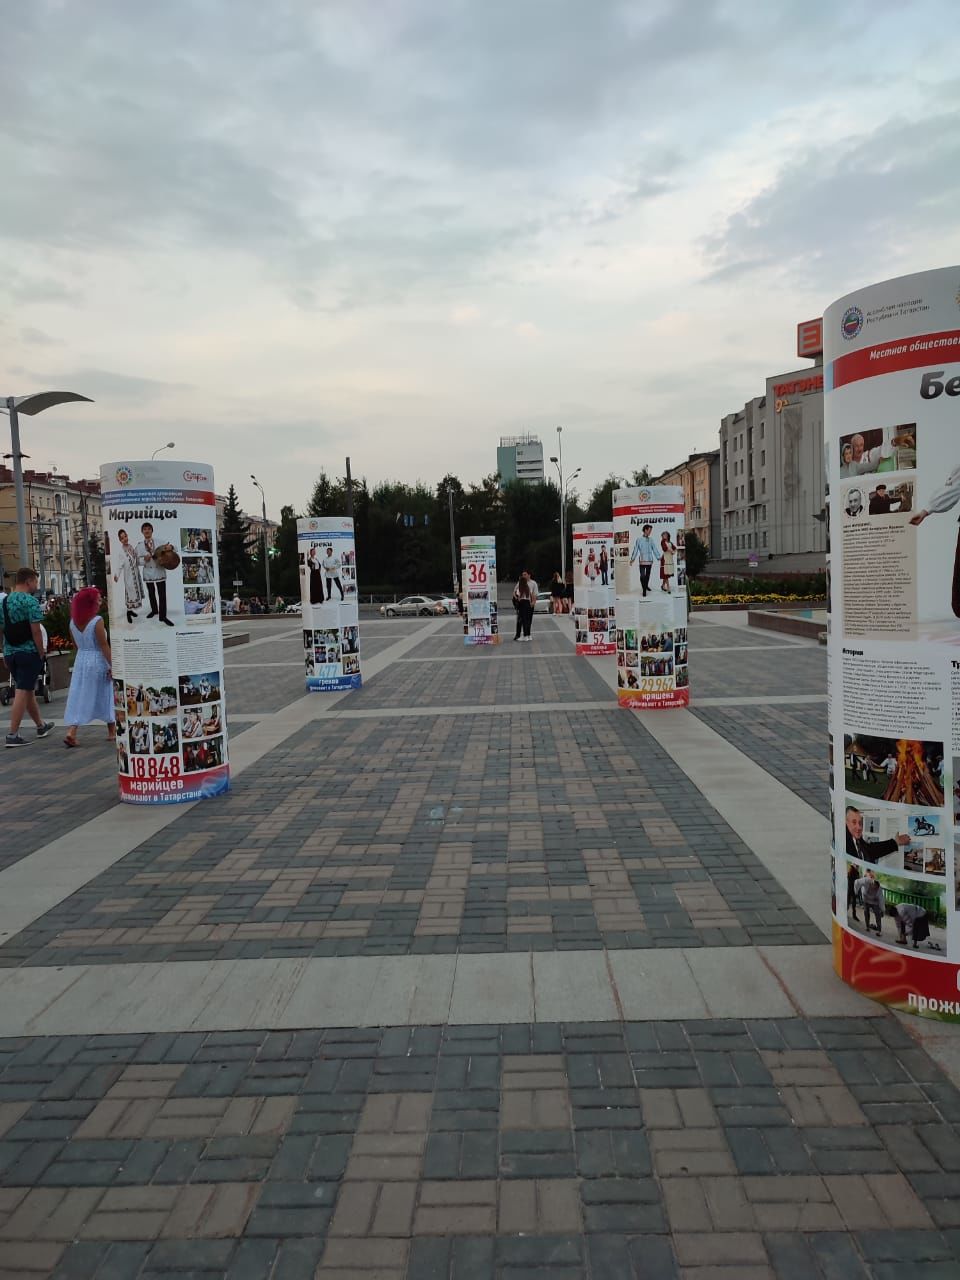 На выставке под открытым небом о народах Татарстана представлены кряшены